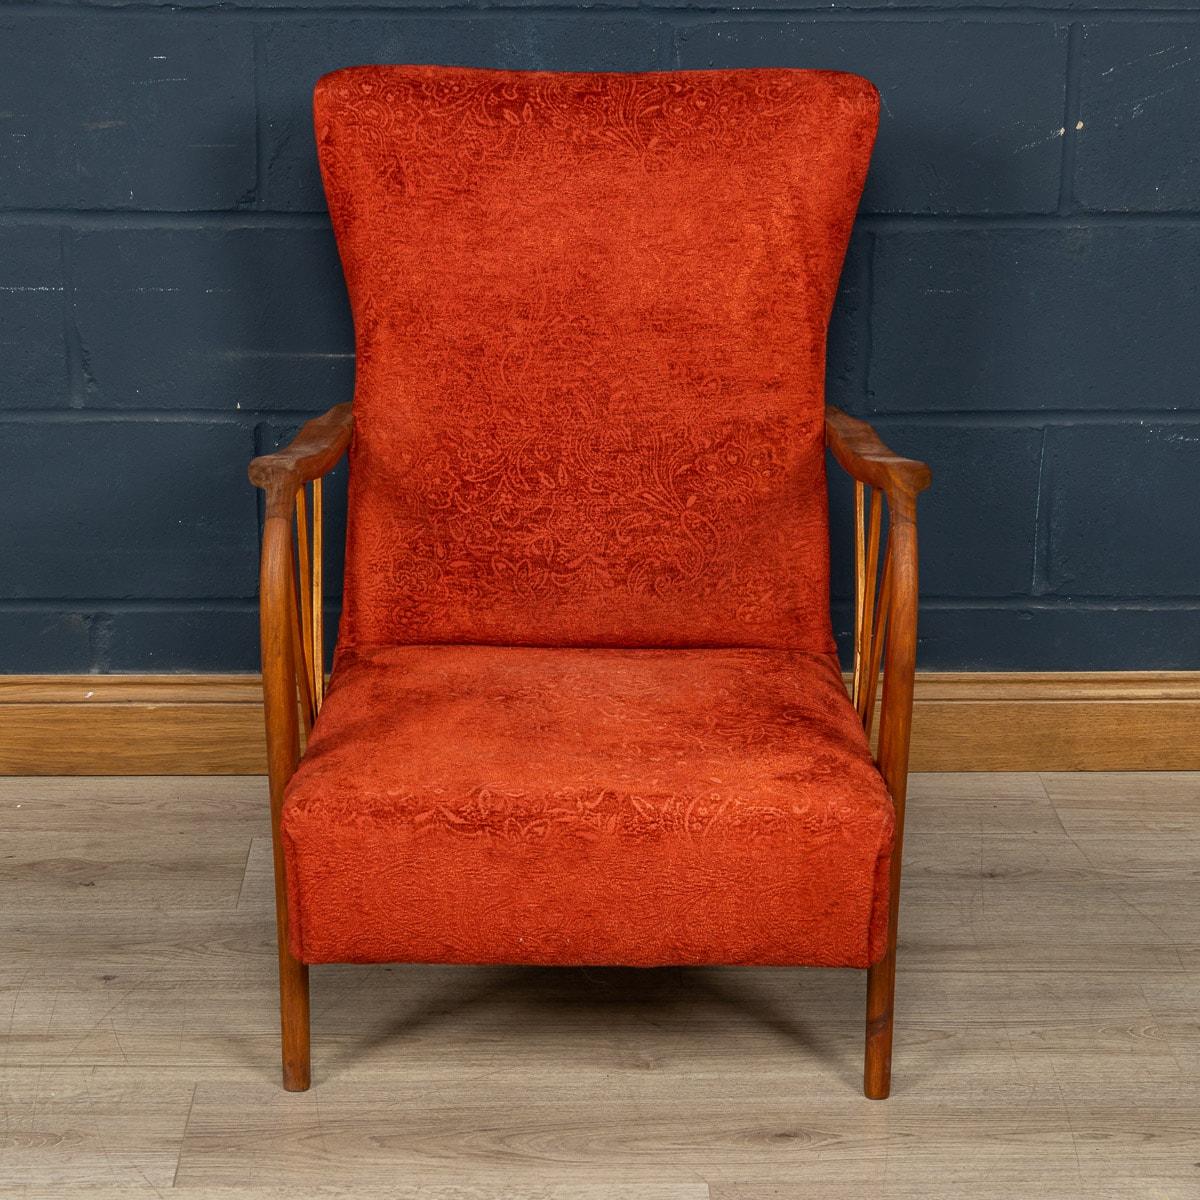 Un beau et très rare fauteuil ou easy chair fabriqué en Italie au milieu du 20e siècle. La chaise a éventuellement été retapissée dans un somptueux tissu floral rouge, en accord avec le style et l'âge de la chaise. Ce qui distingue vraiment cette